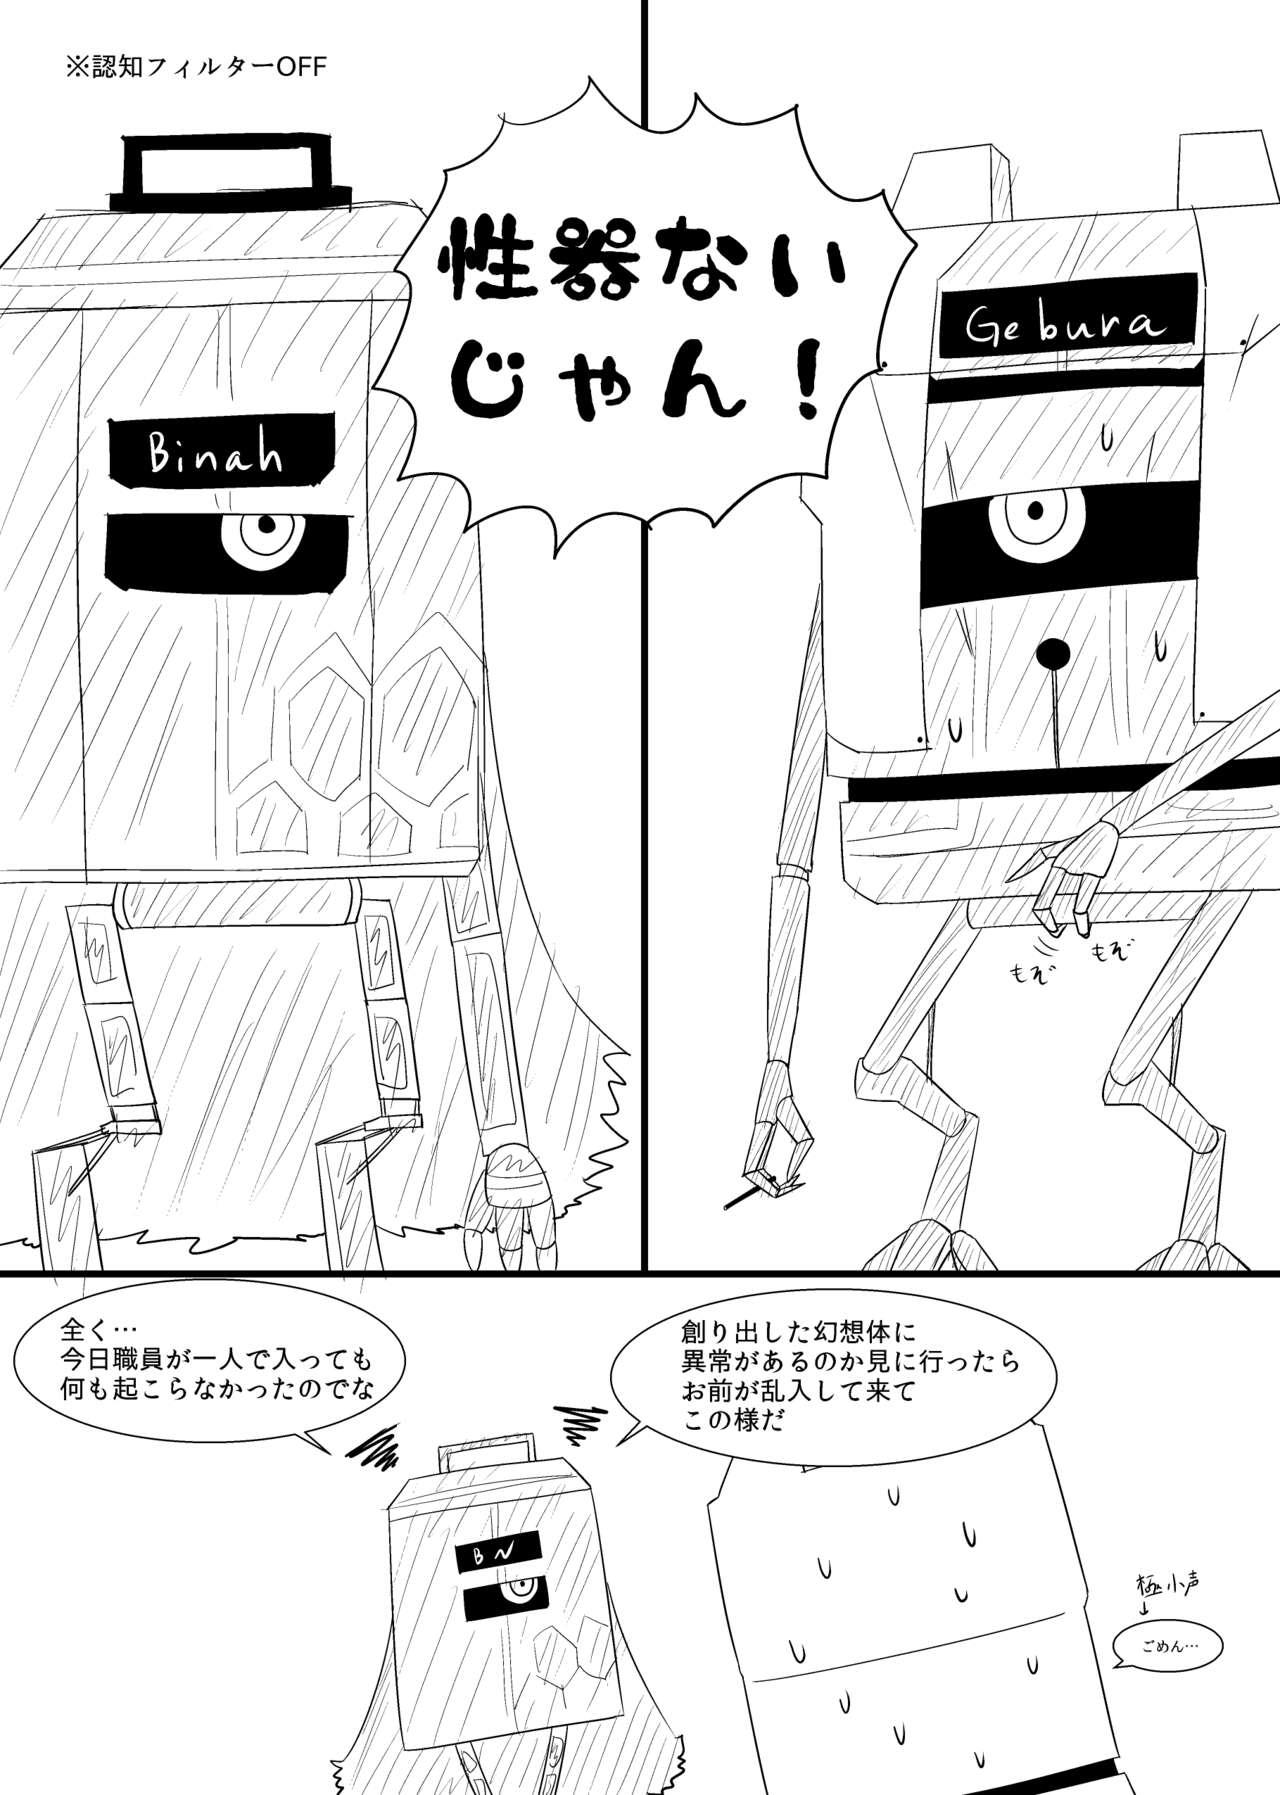 Peituda Rikuesuto no Manga - Lobotomy corporation Putas - Page 4